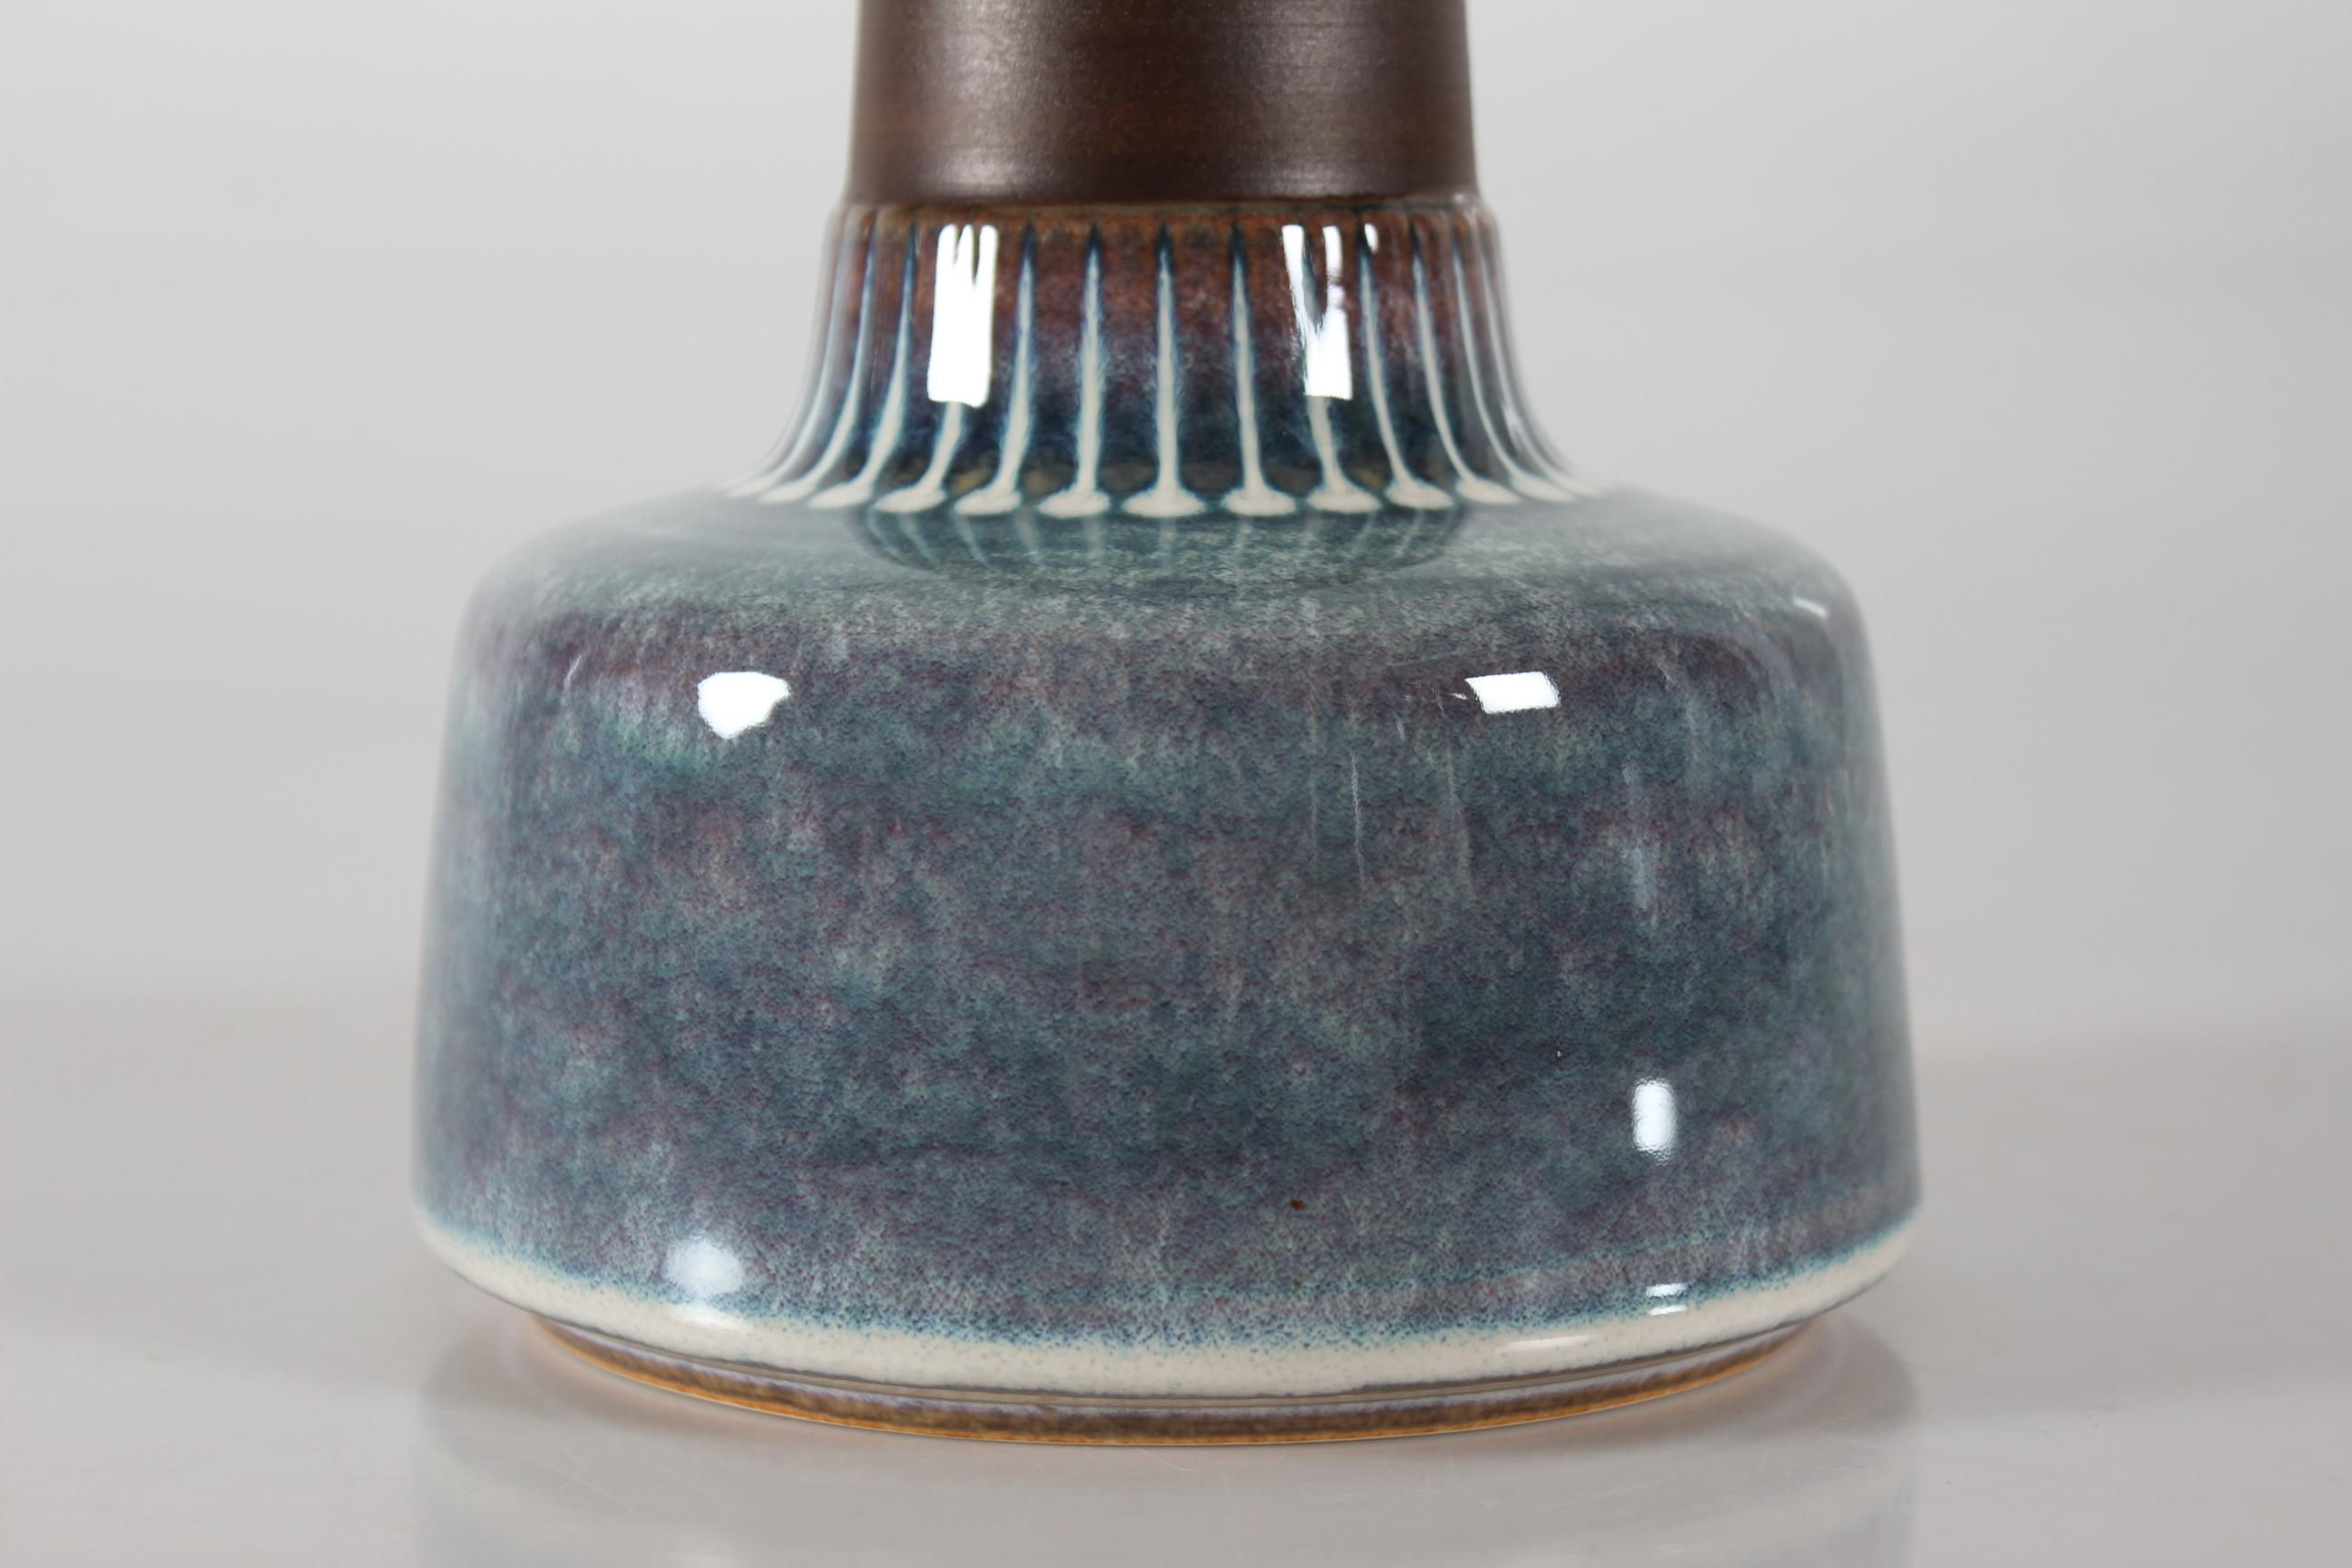 Lampe de table danoise du milieu du siècle par le céramiste danois Einar Johansen pour Søholm. Fabriqué vers les années 1960.

La base de la lampe a un col brun mat contrasté par une glaçure brillante aux couleurs de la nacre et des points